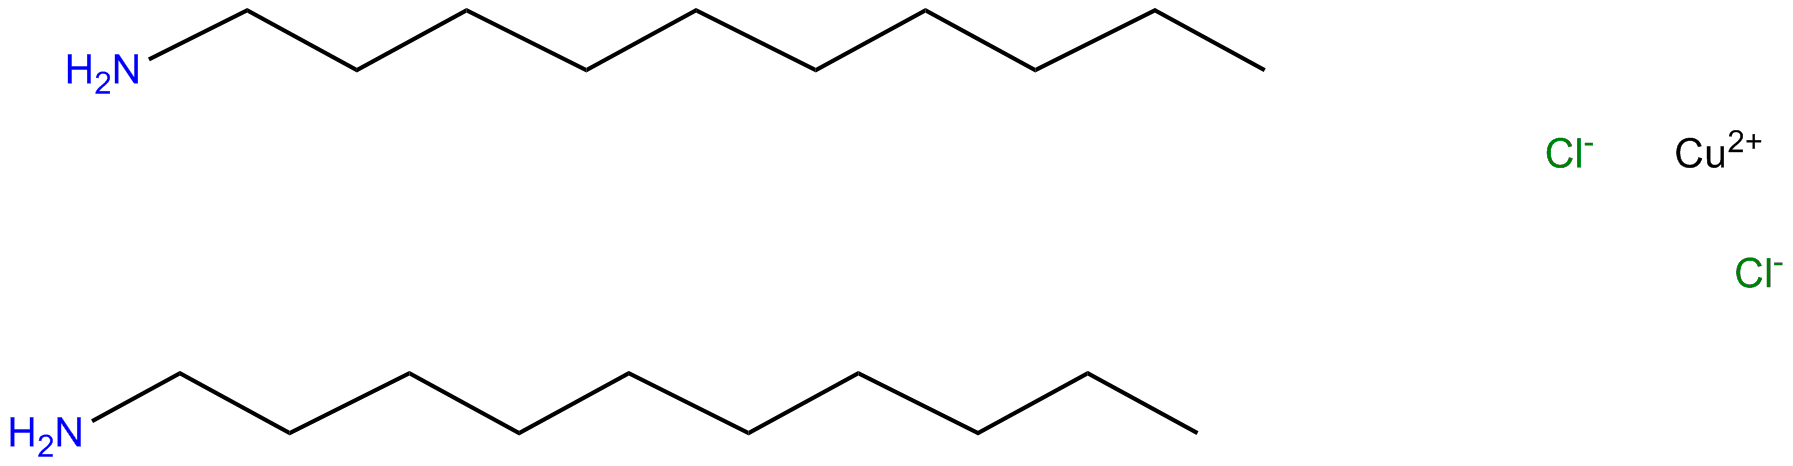 Image of dichlorobis(1-decanamine)copper